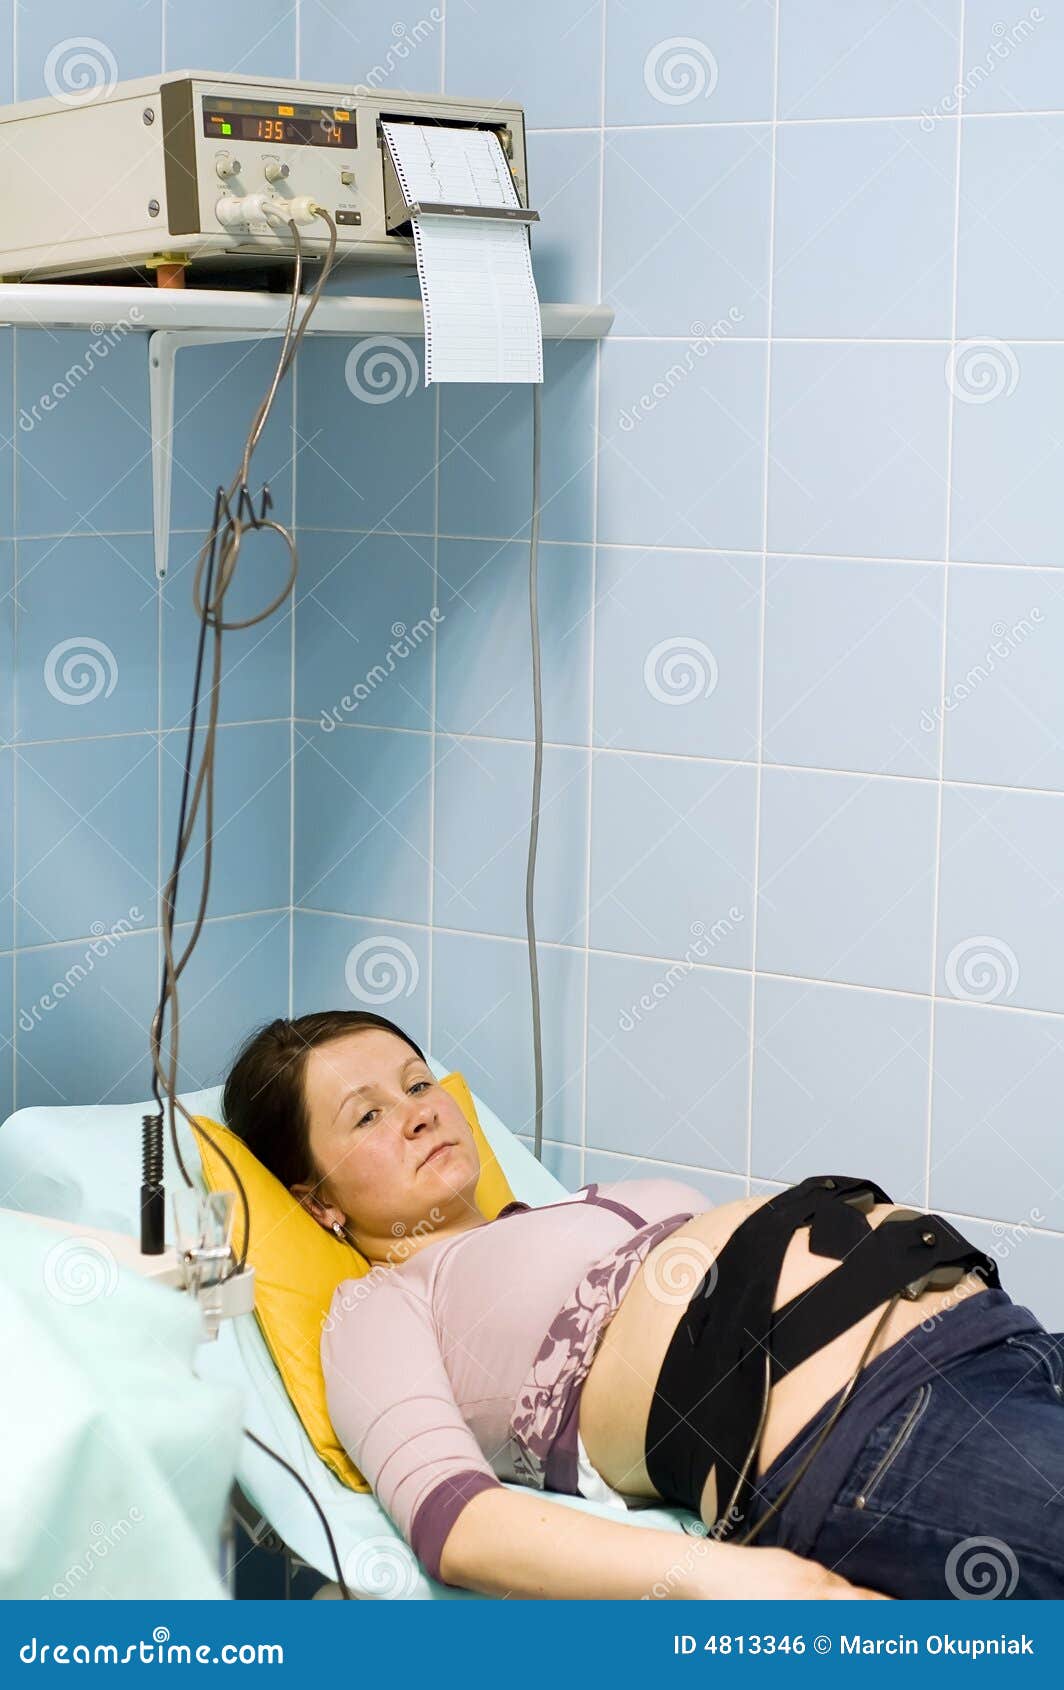 pregnant woman examination